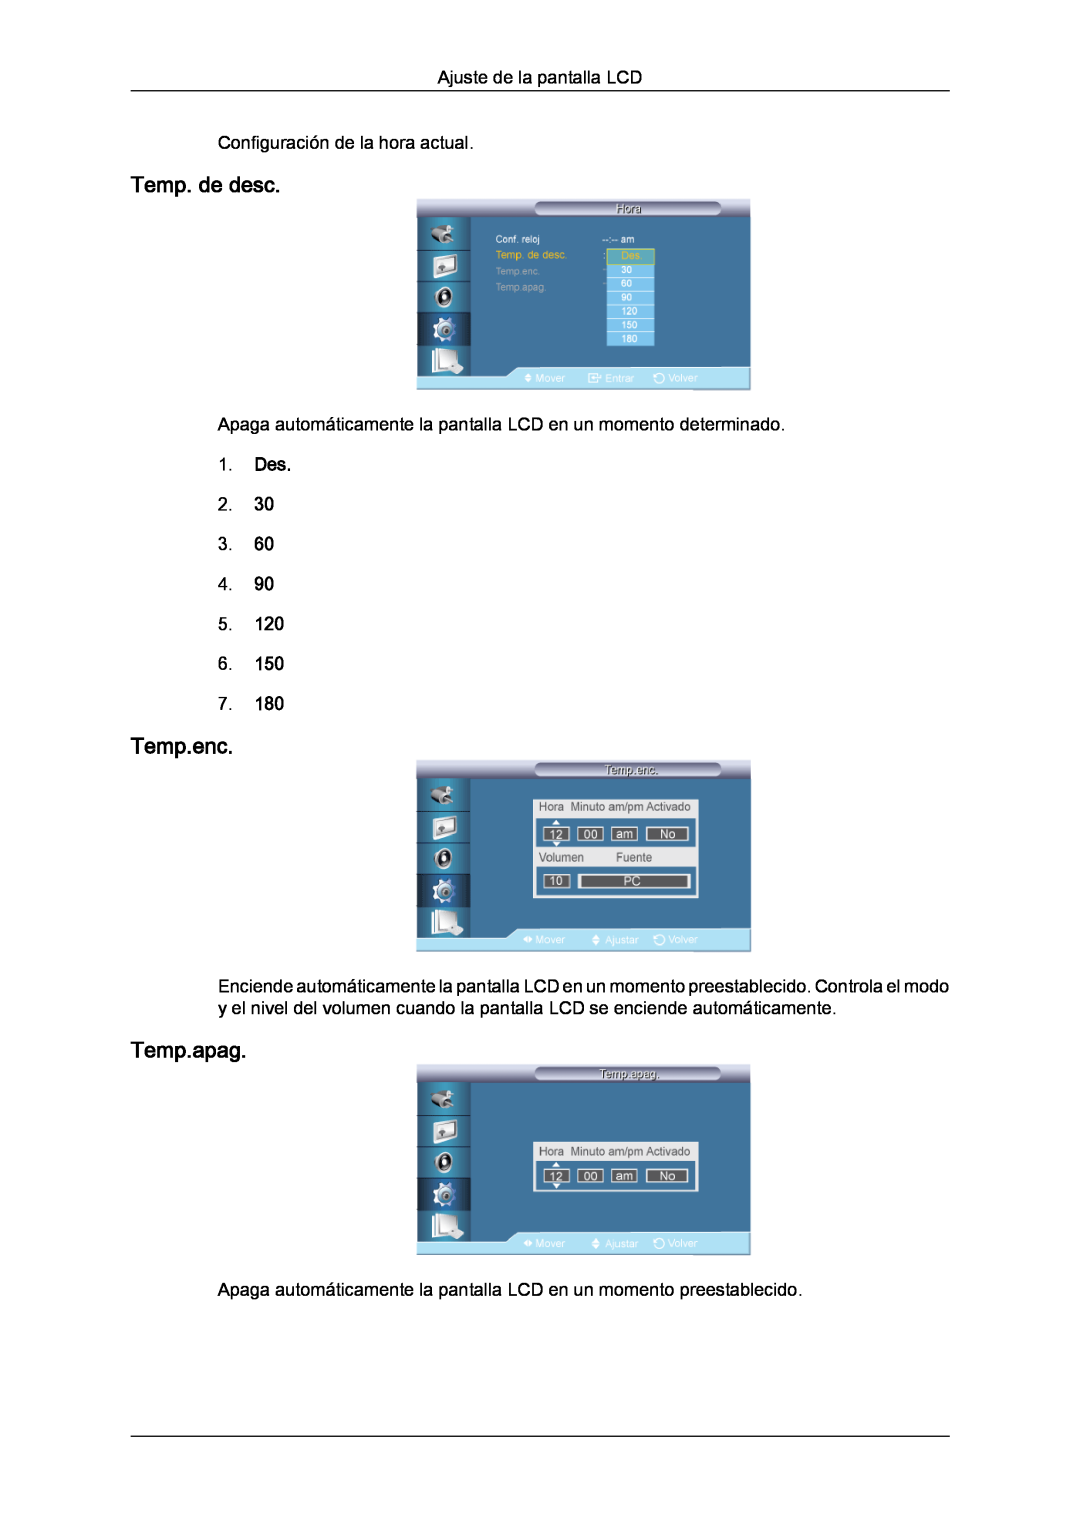 Samsung LH70TCUMBG/EN Temp. de desc, Temp.enc, Temp.apag, Ajuste de la pantalla LCD Configuración de la hora actual, Des 